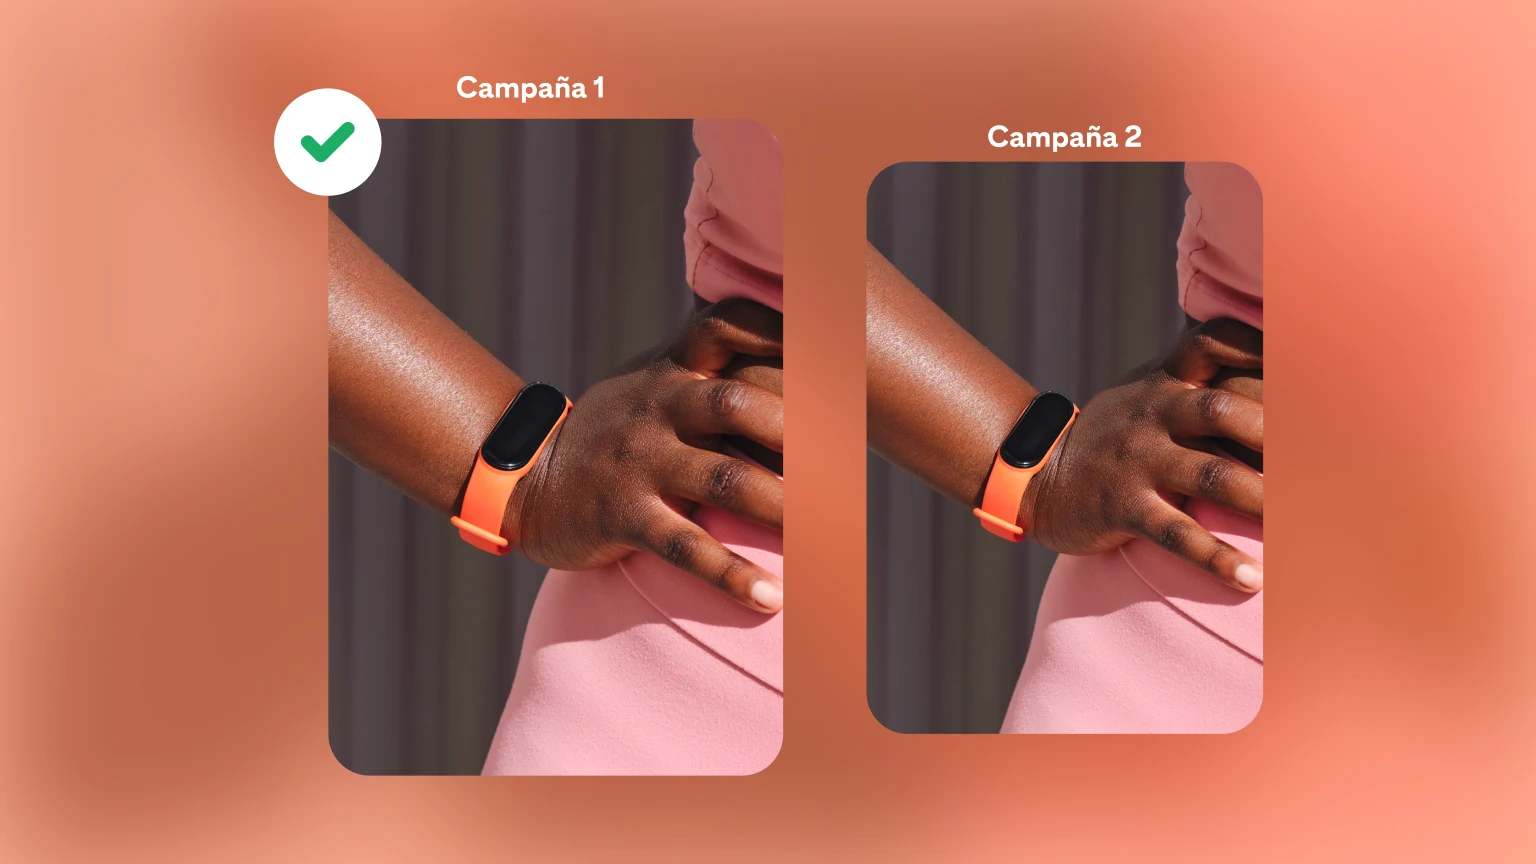 Dos campañas de relojes sobre un fondo de color naranja intenso. Se destaca a la campaña 1 como la ganadora con una marca de verificación negra.